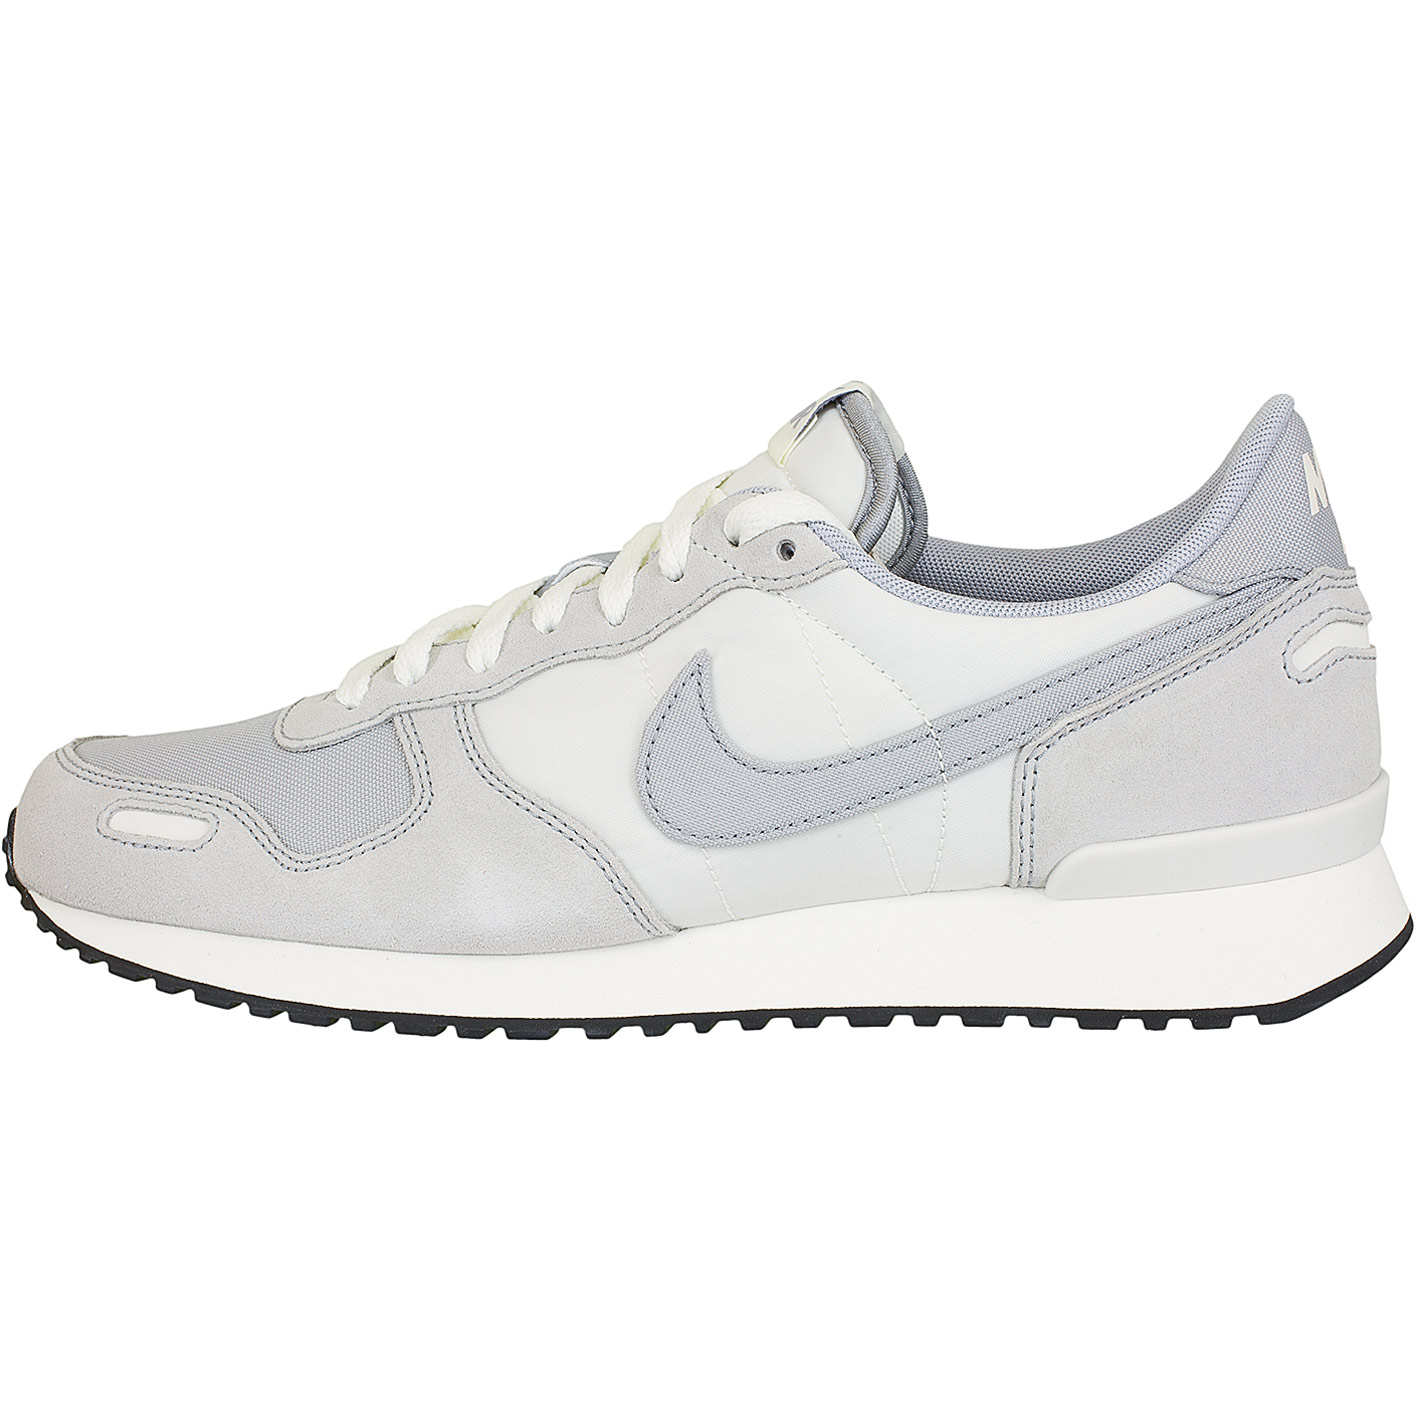 ☆ Nike Sneaker Air Vortex weiß/grau - hier bestellen!